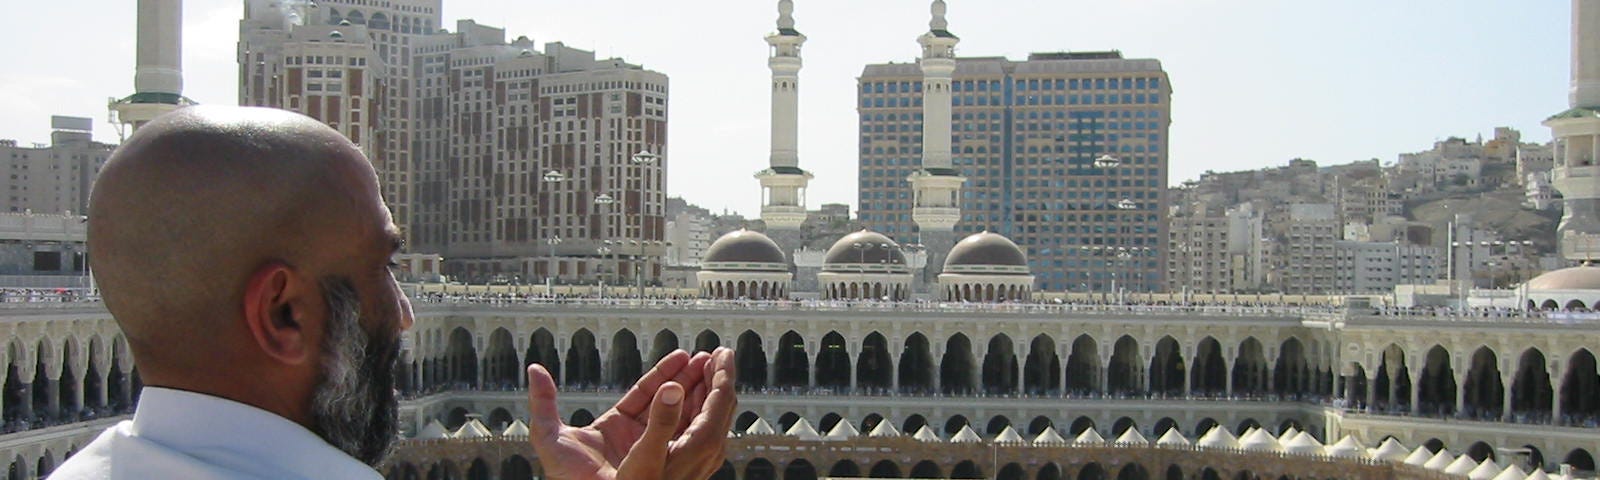 Supplicating Pilgrim at Masjid Al Haram. Mecca, Saudi Arabia